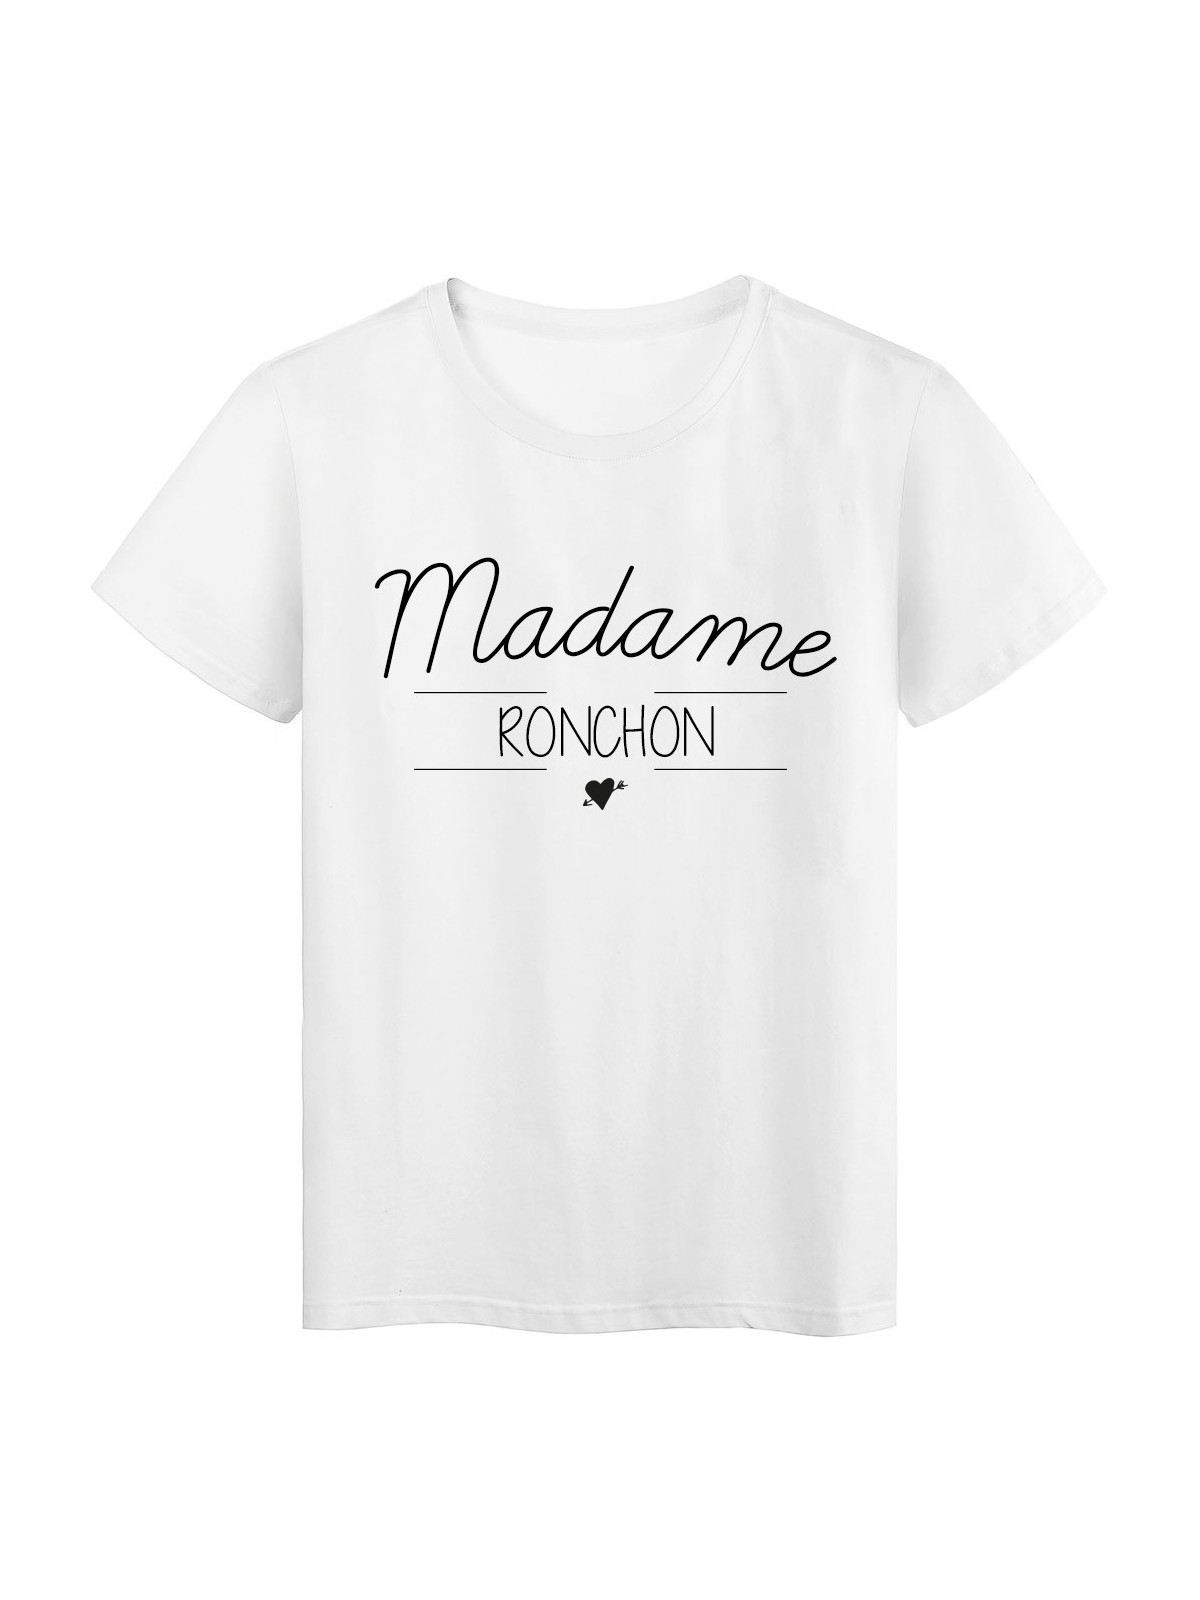 T-Shirt imprimÃ© humour design Madame ronchon